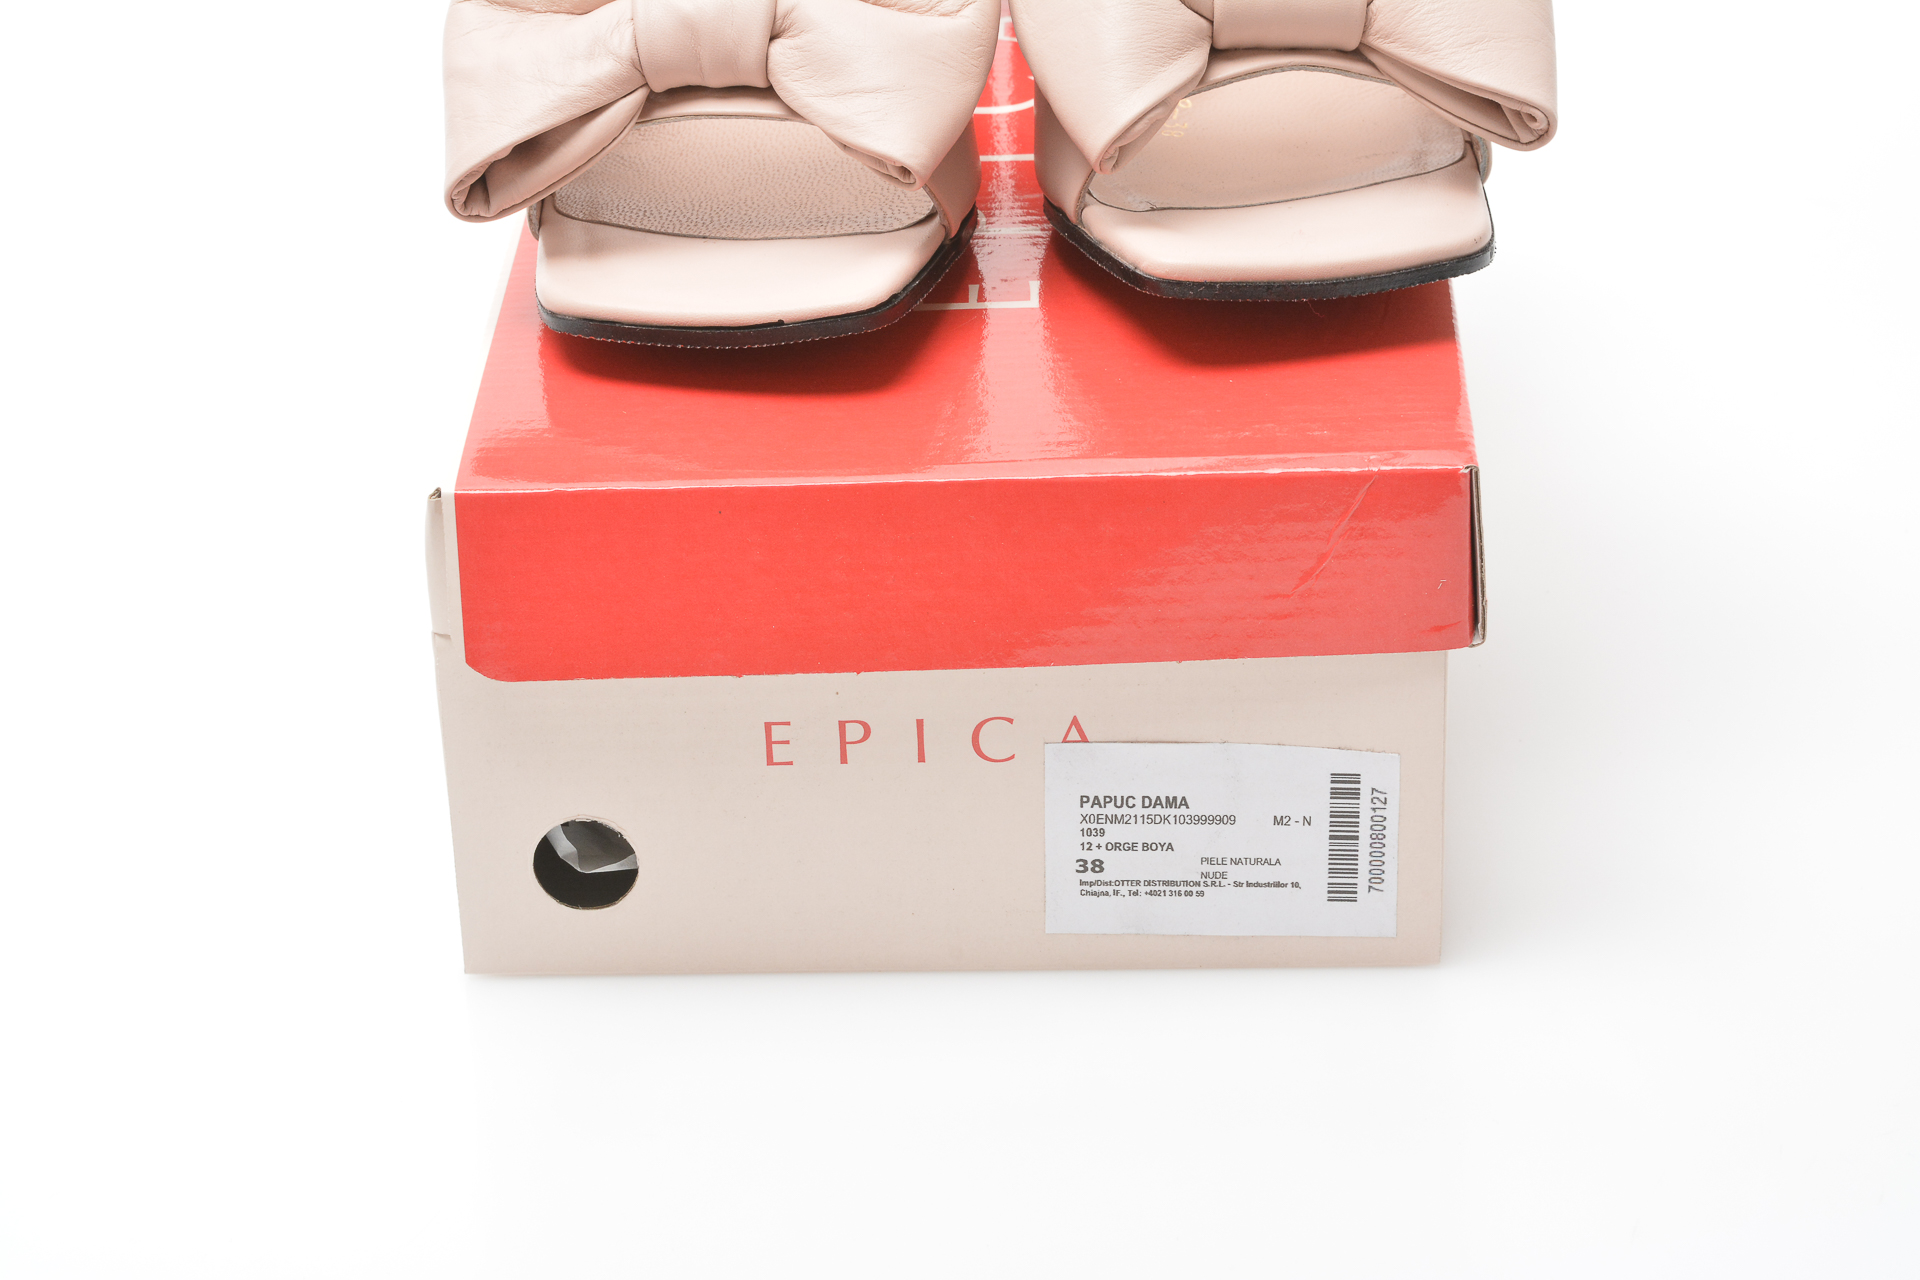 Papuci EPICA nude, 1039, din piele naturala 2022 ❤️ Pret Super tezyo.ro imagine noua 2022